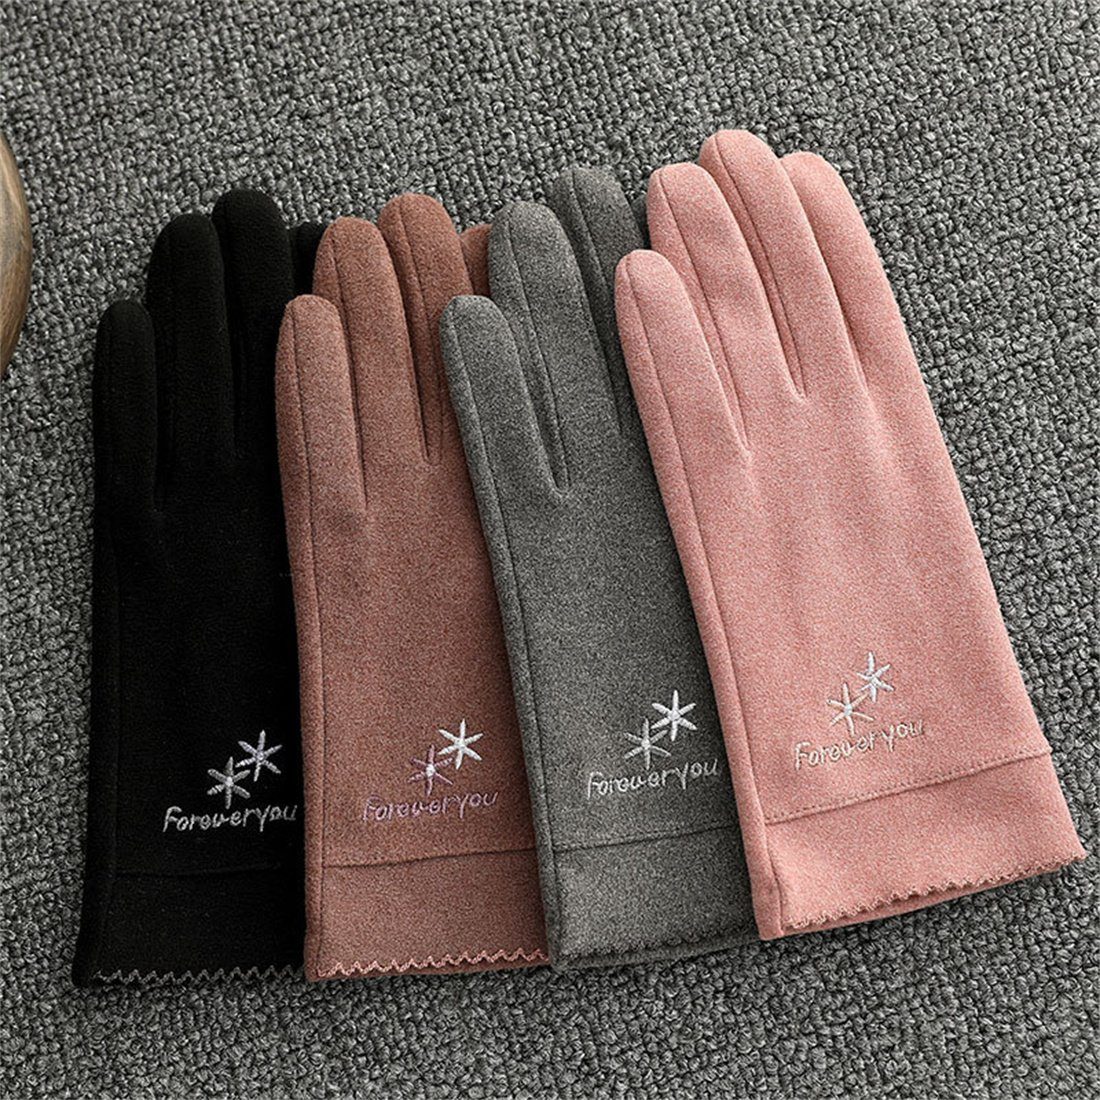 DÖRÖY Fleecehandschuhe Damenmode Reithandschuhe, Rosa Warme Touchscreen Winter Handschuhe